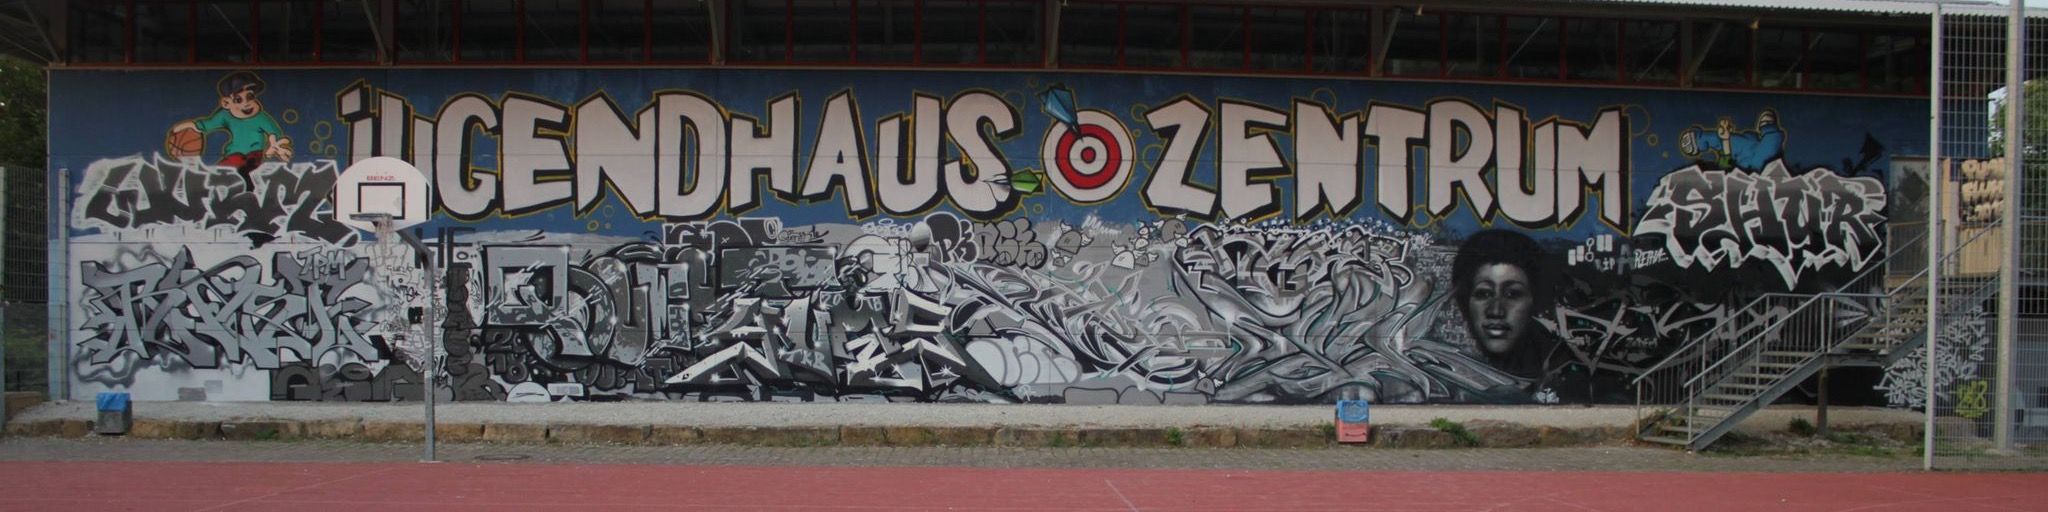 Titelbild von Jugendhaus Zentrum Neuffenstraße in Wendlingen 